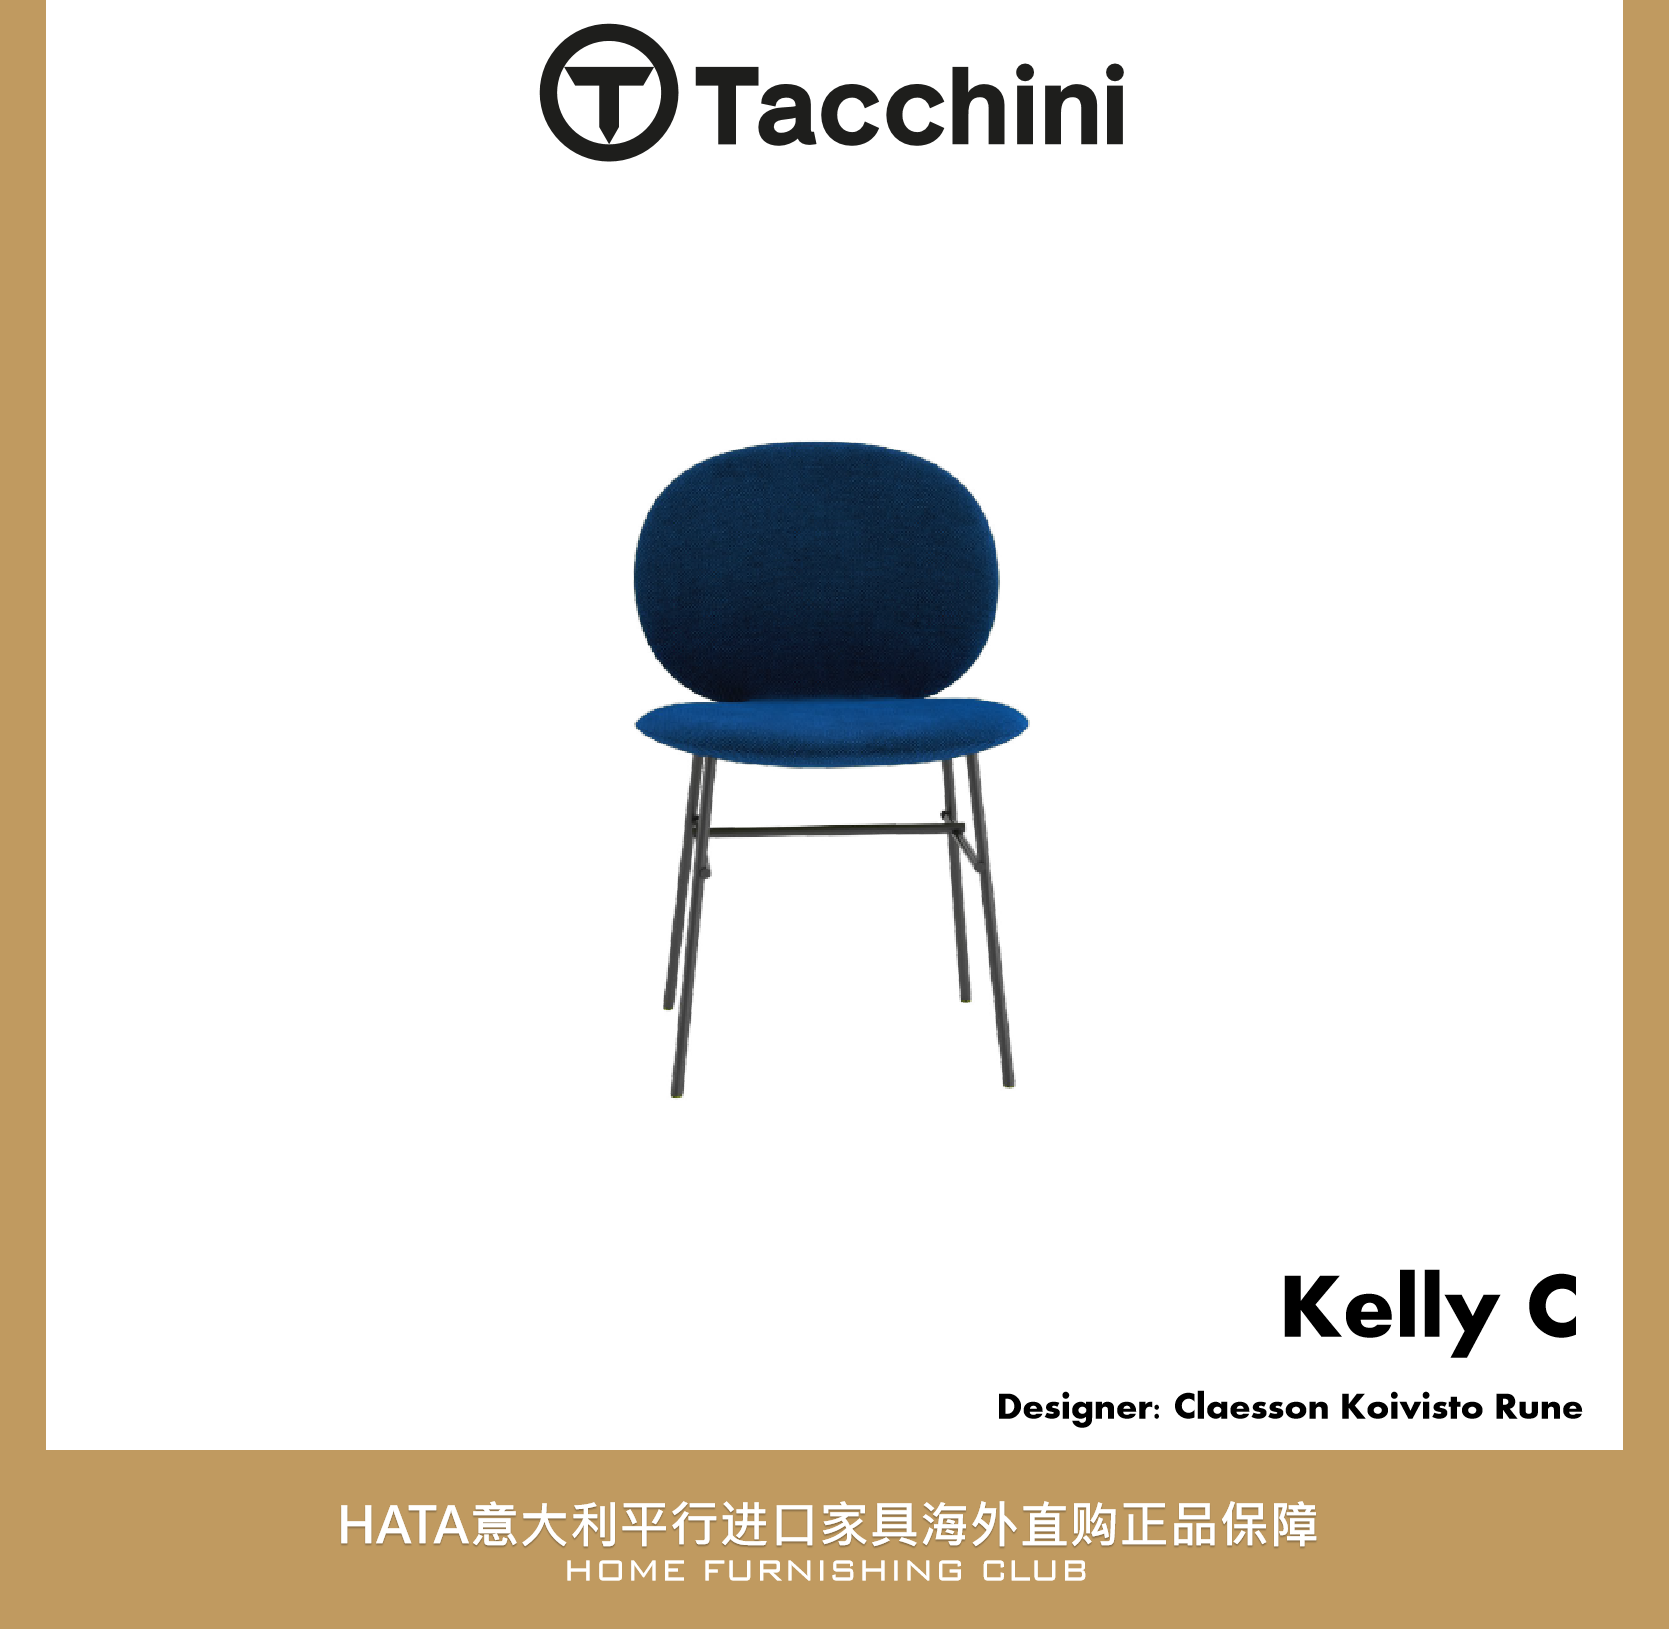 Tacchini 椅子金属脚意大利进口家具代购现代设计师 Kelly C